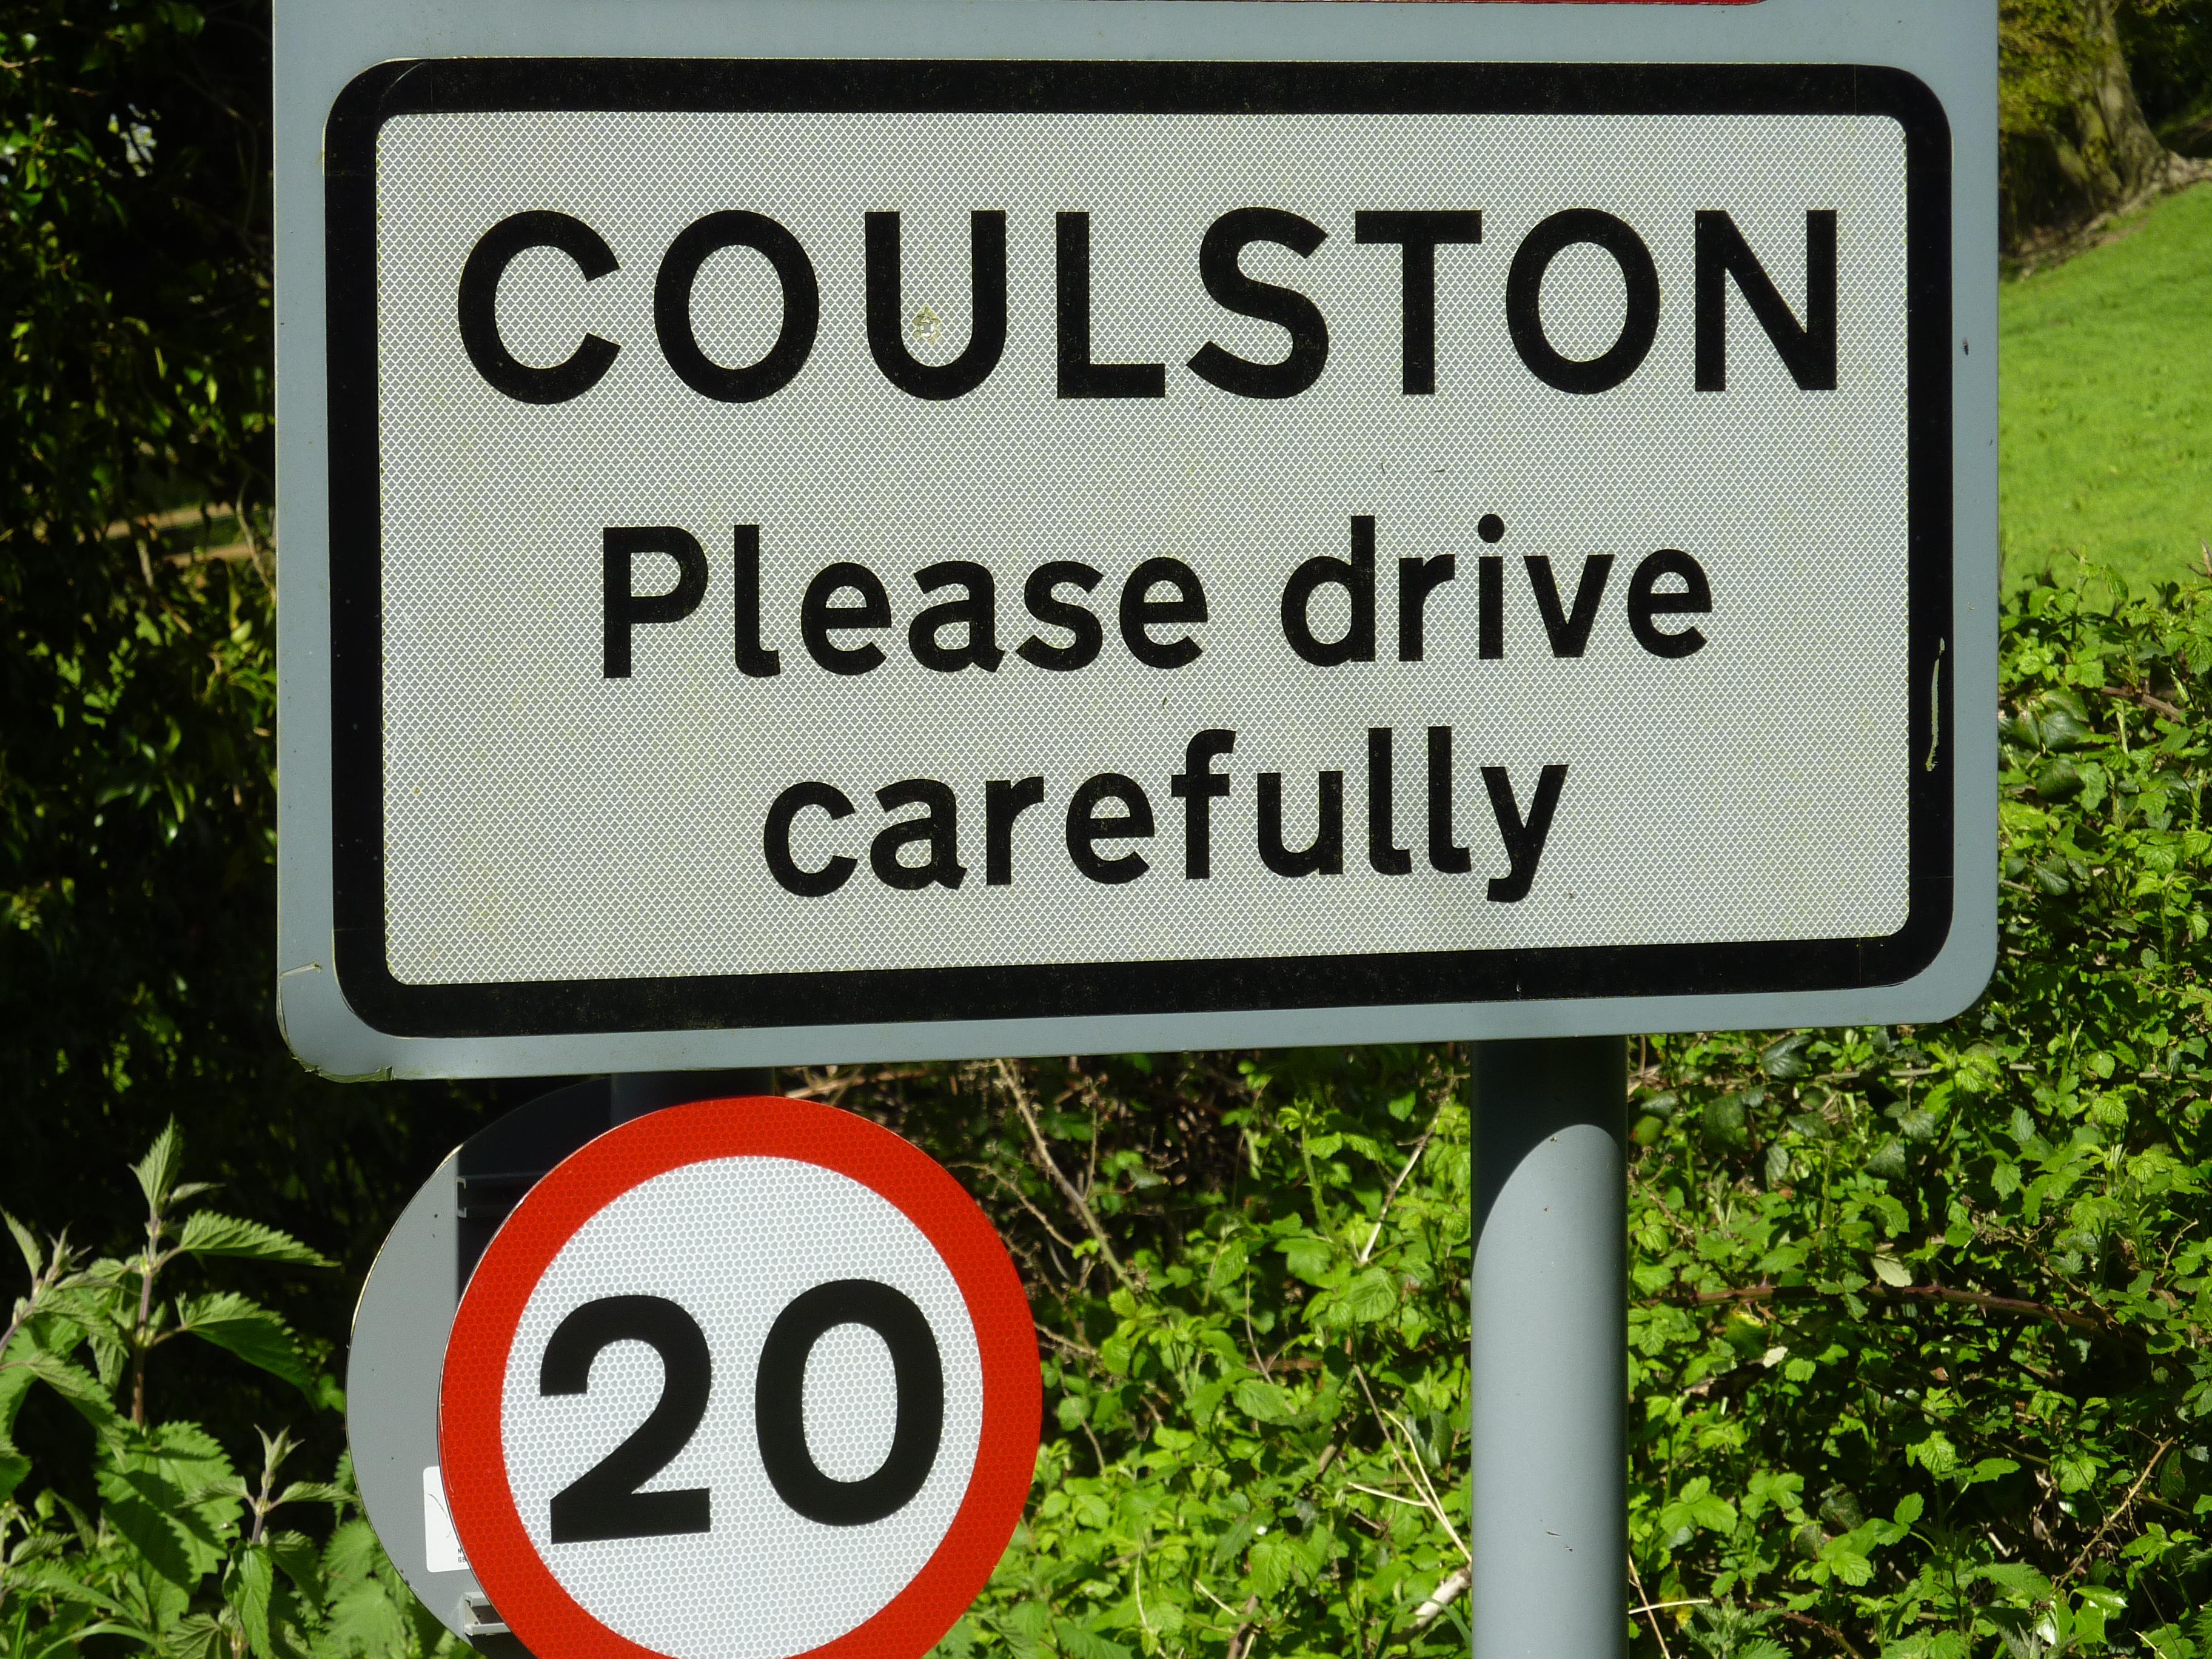 Coulston Parish Council